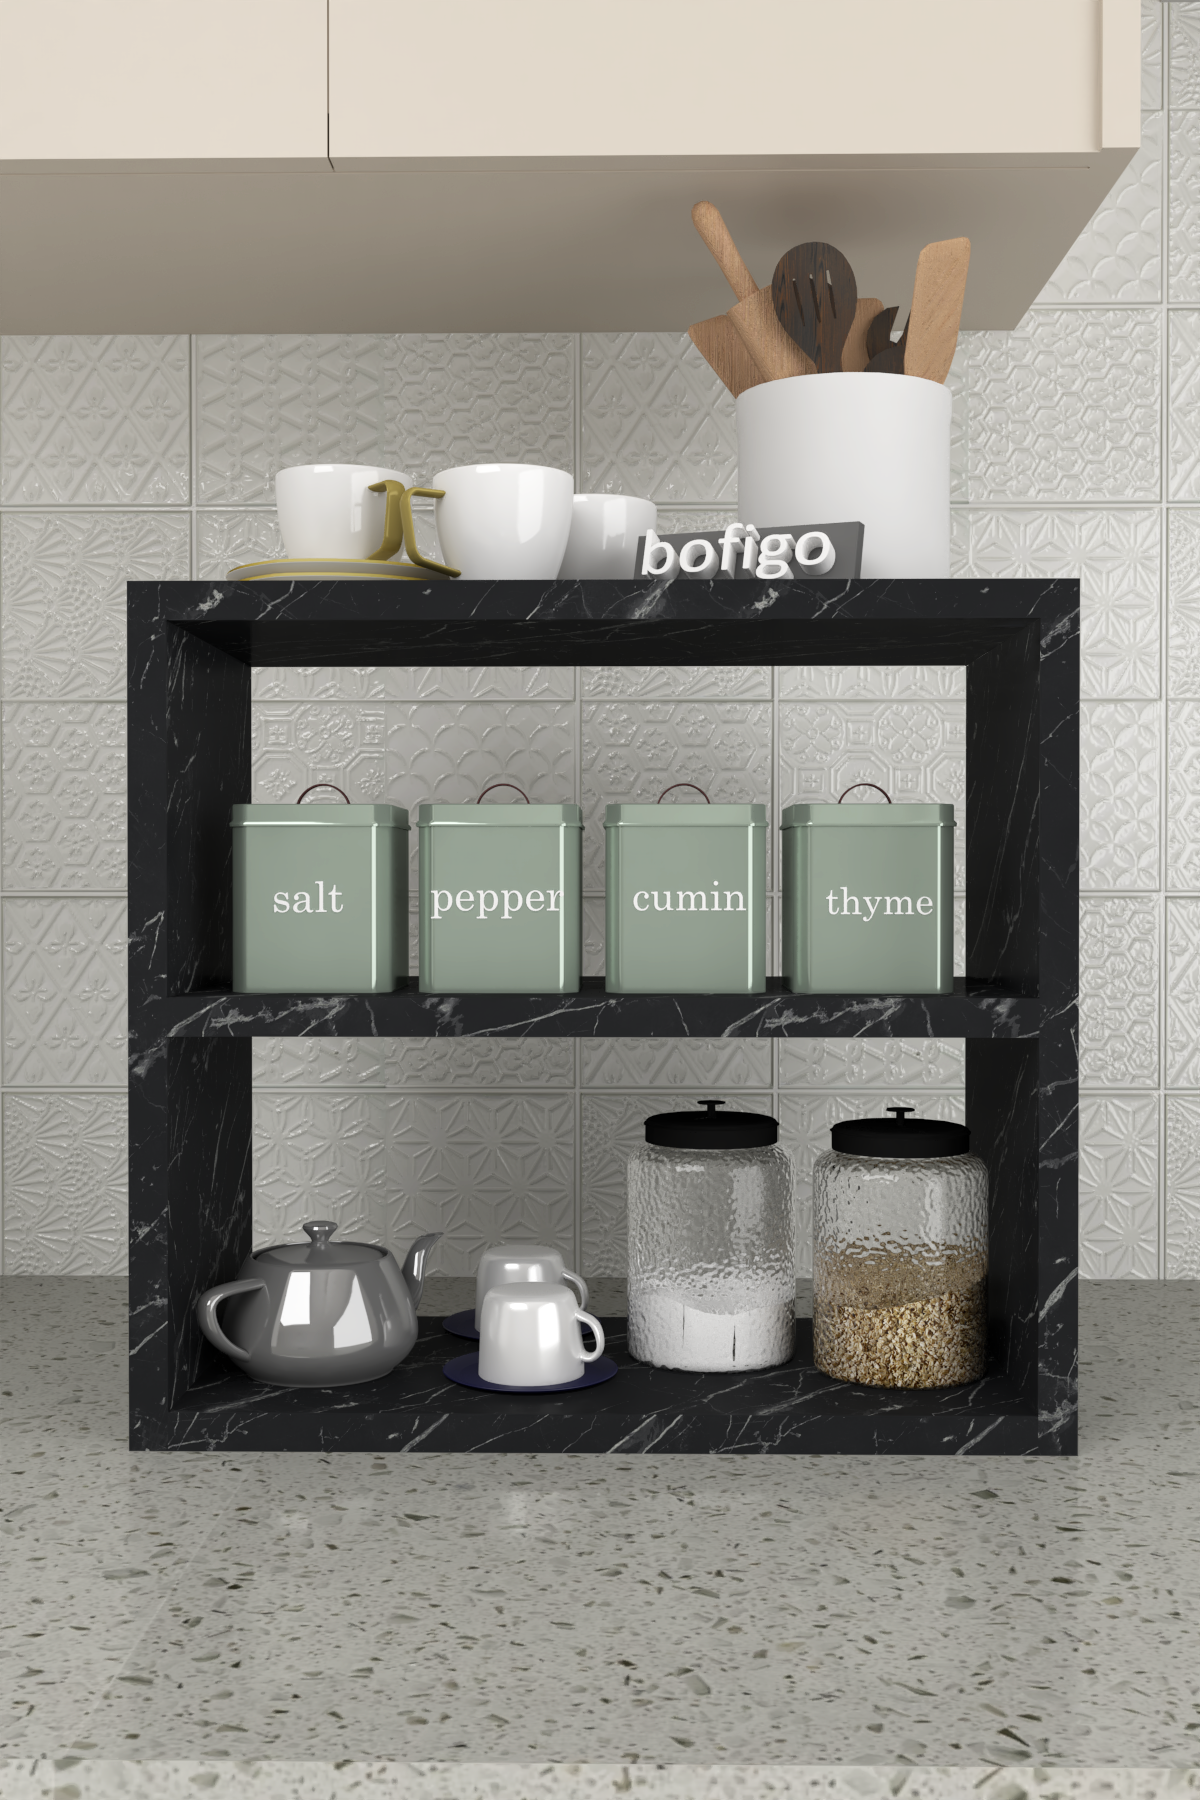 Bofigo Counter Top Shelf Spice Rack Bendir